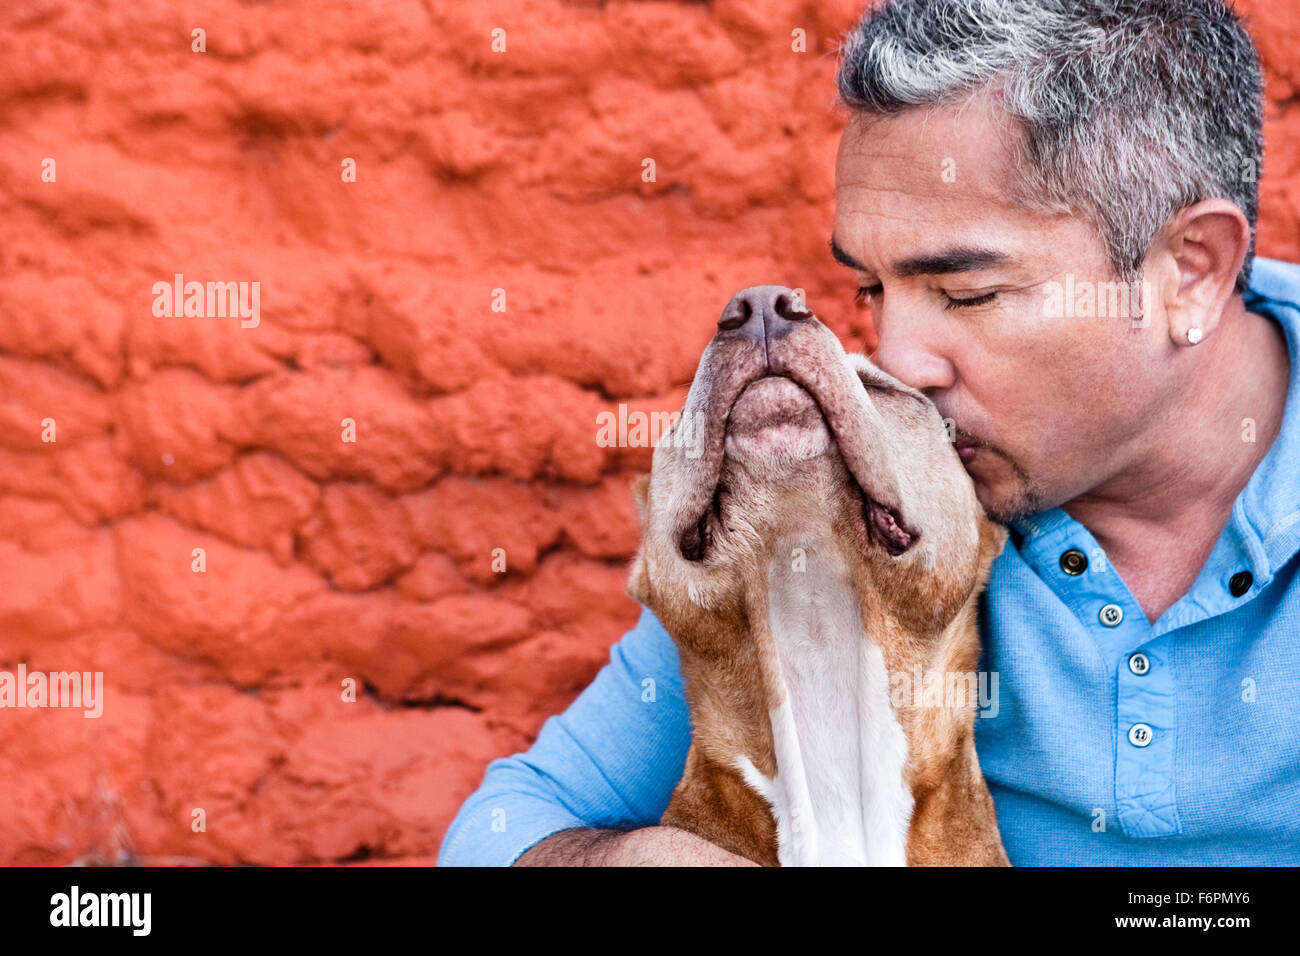 Dog Whisperer Ceasr Millan al ranch Mostra amore e affetto kissing pitbull cane Daddy davanti al dipinto di rosso muro di pietra Foto Stock